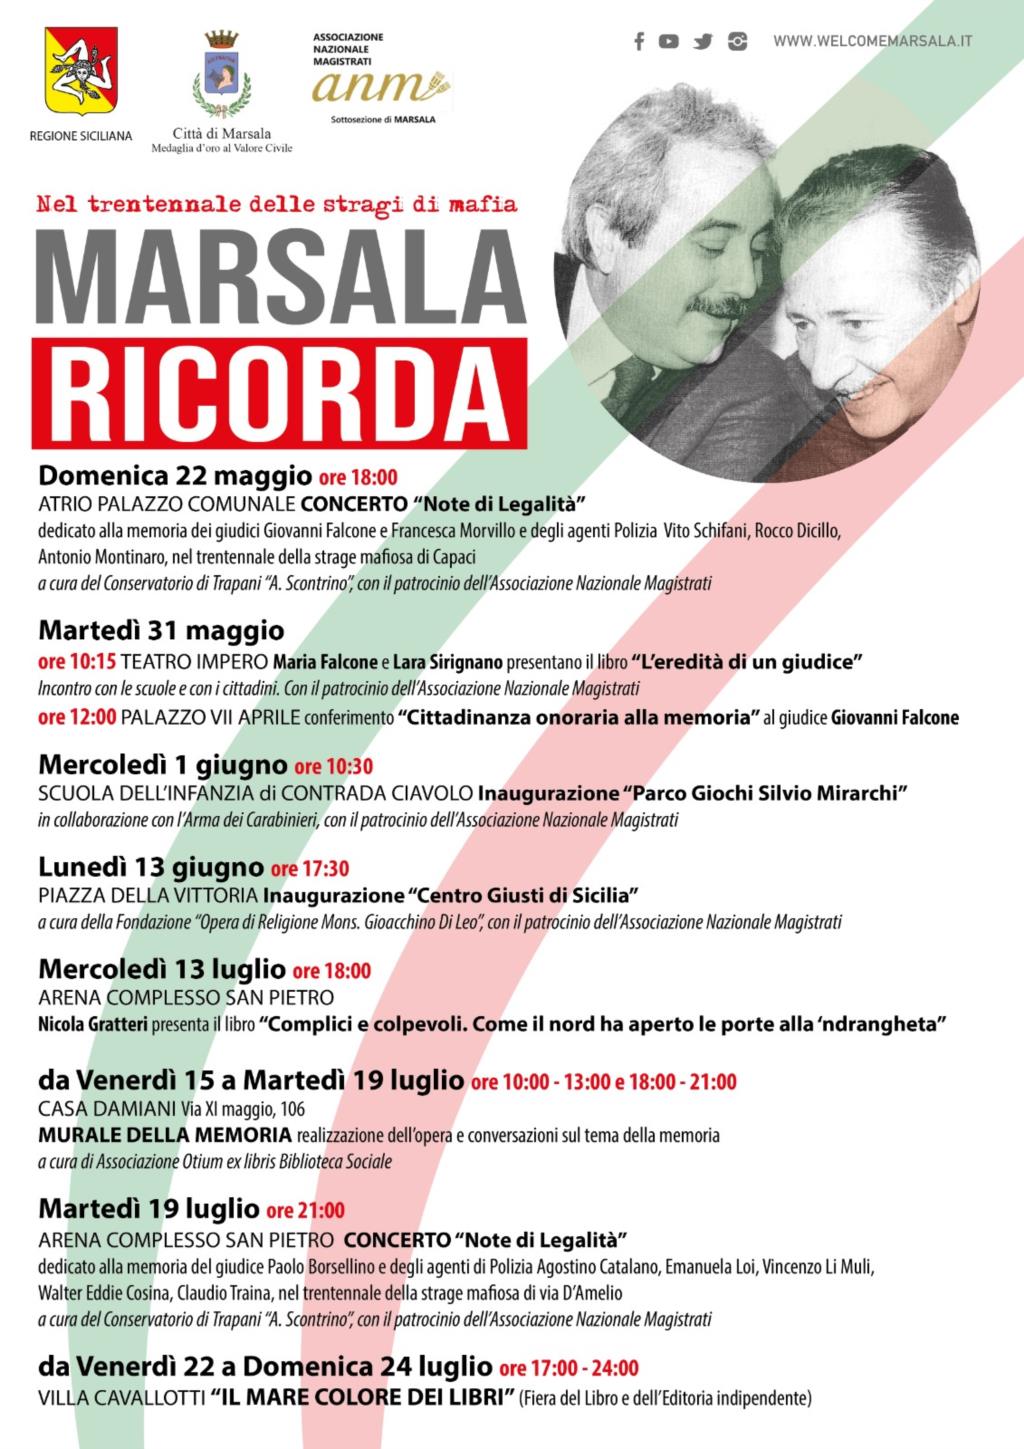 Trentennale stragi di mafia a Marsala: appuntamenti rinviati